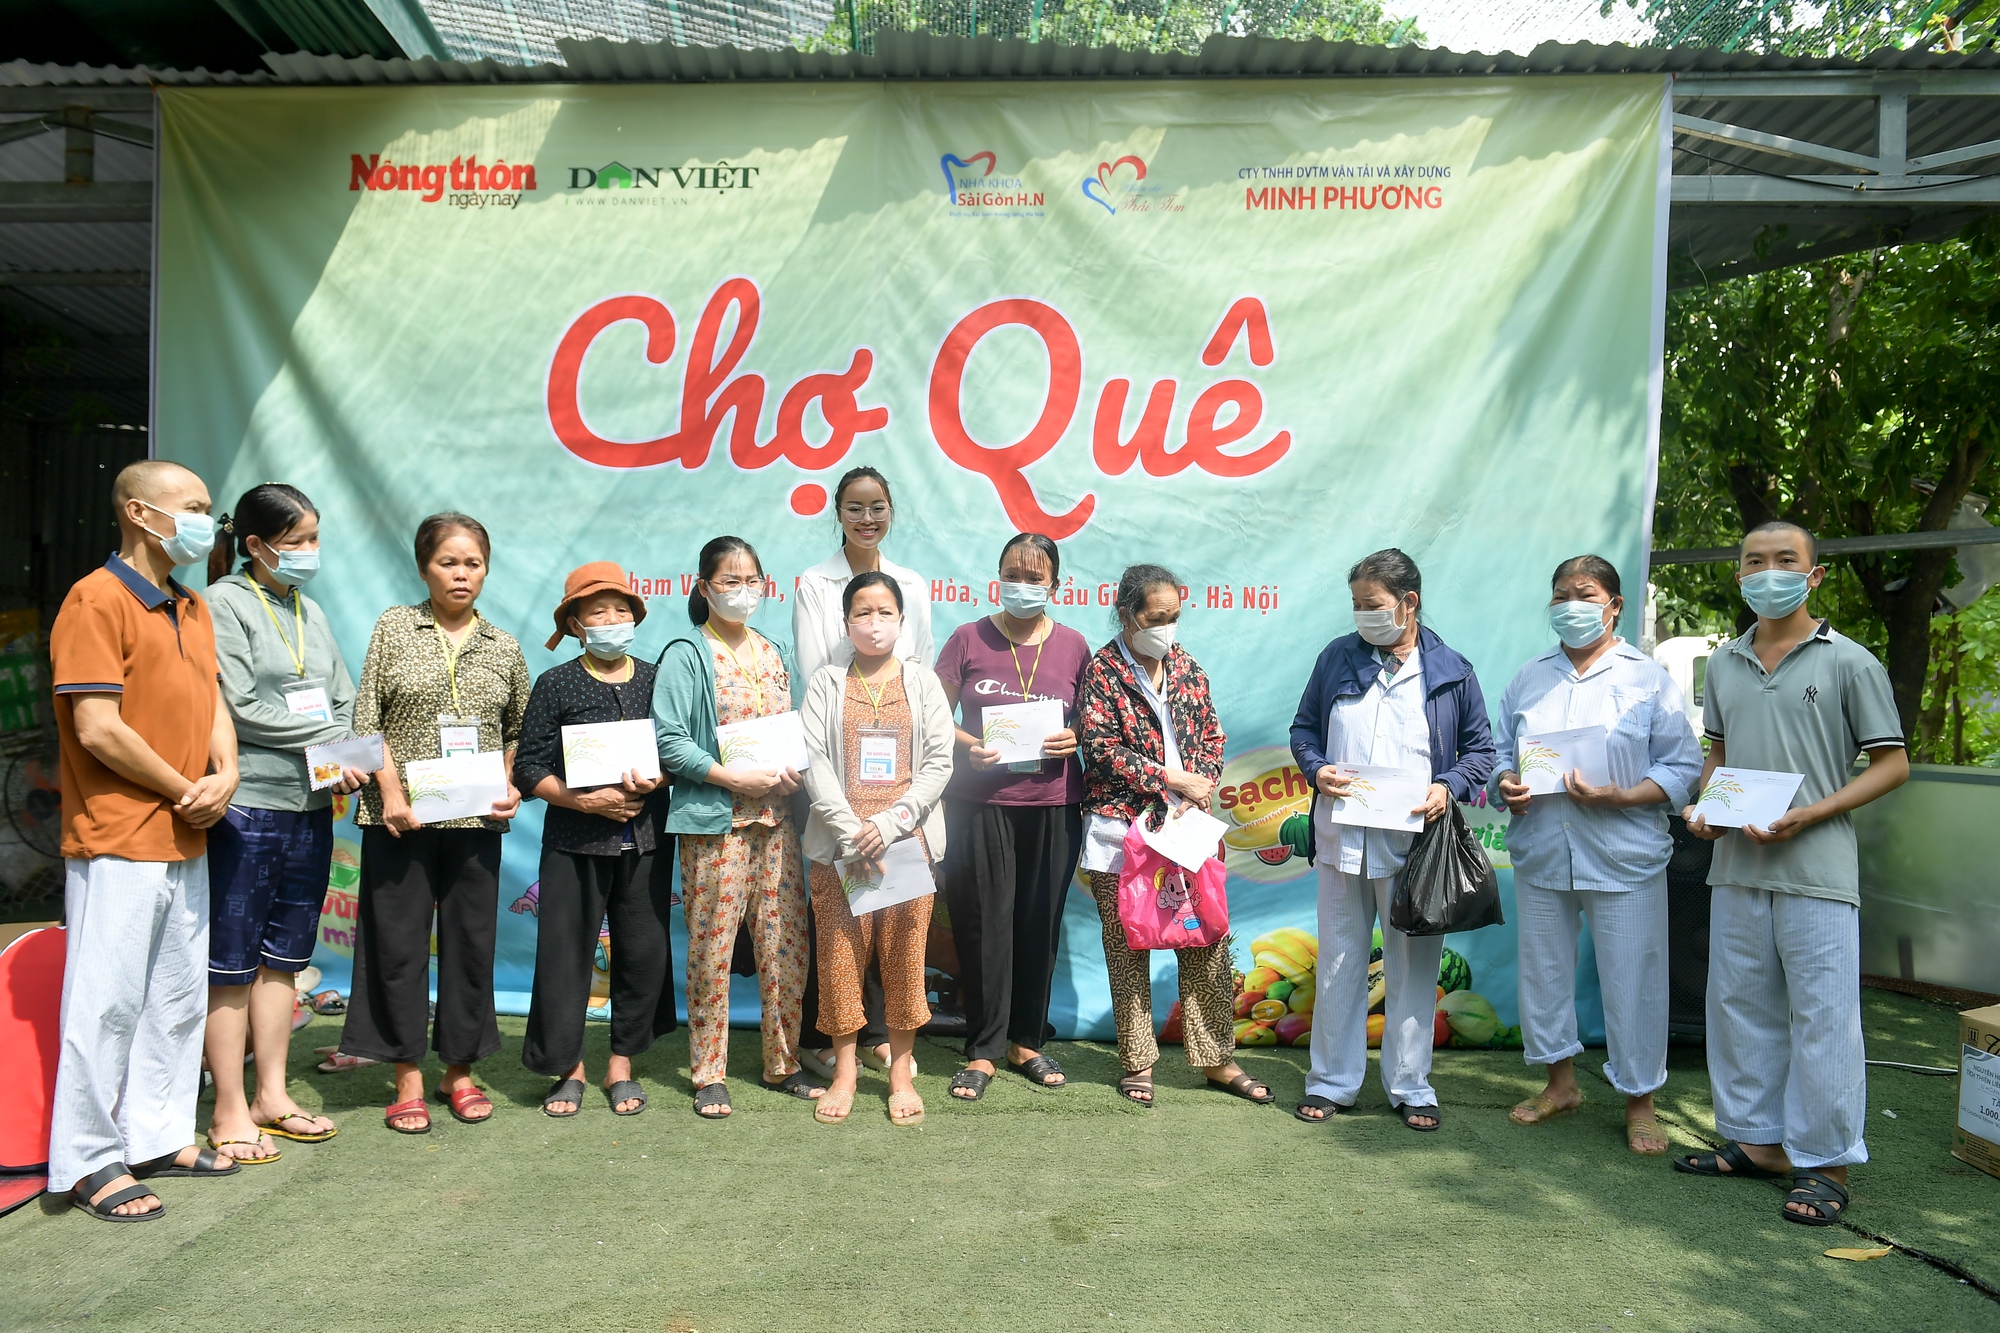 Á hậu 1 Đào Thị Hiền tặng 500 cây giống, trao quà cho 25 bệnh nhân khó khăn tại Chợ Quê  - Ảnh 6.